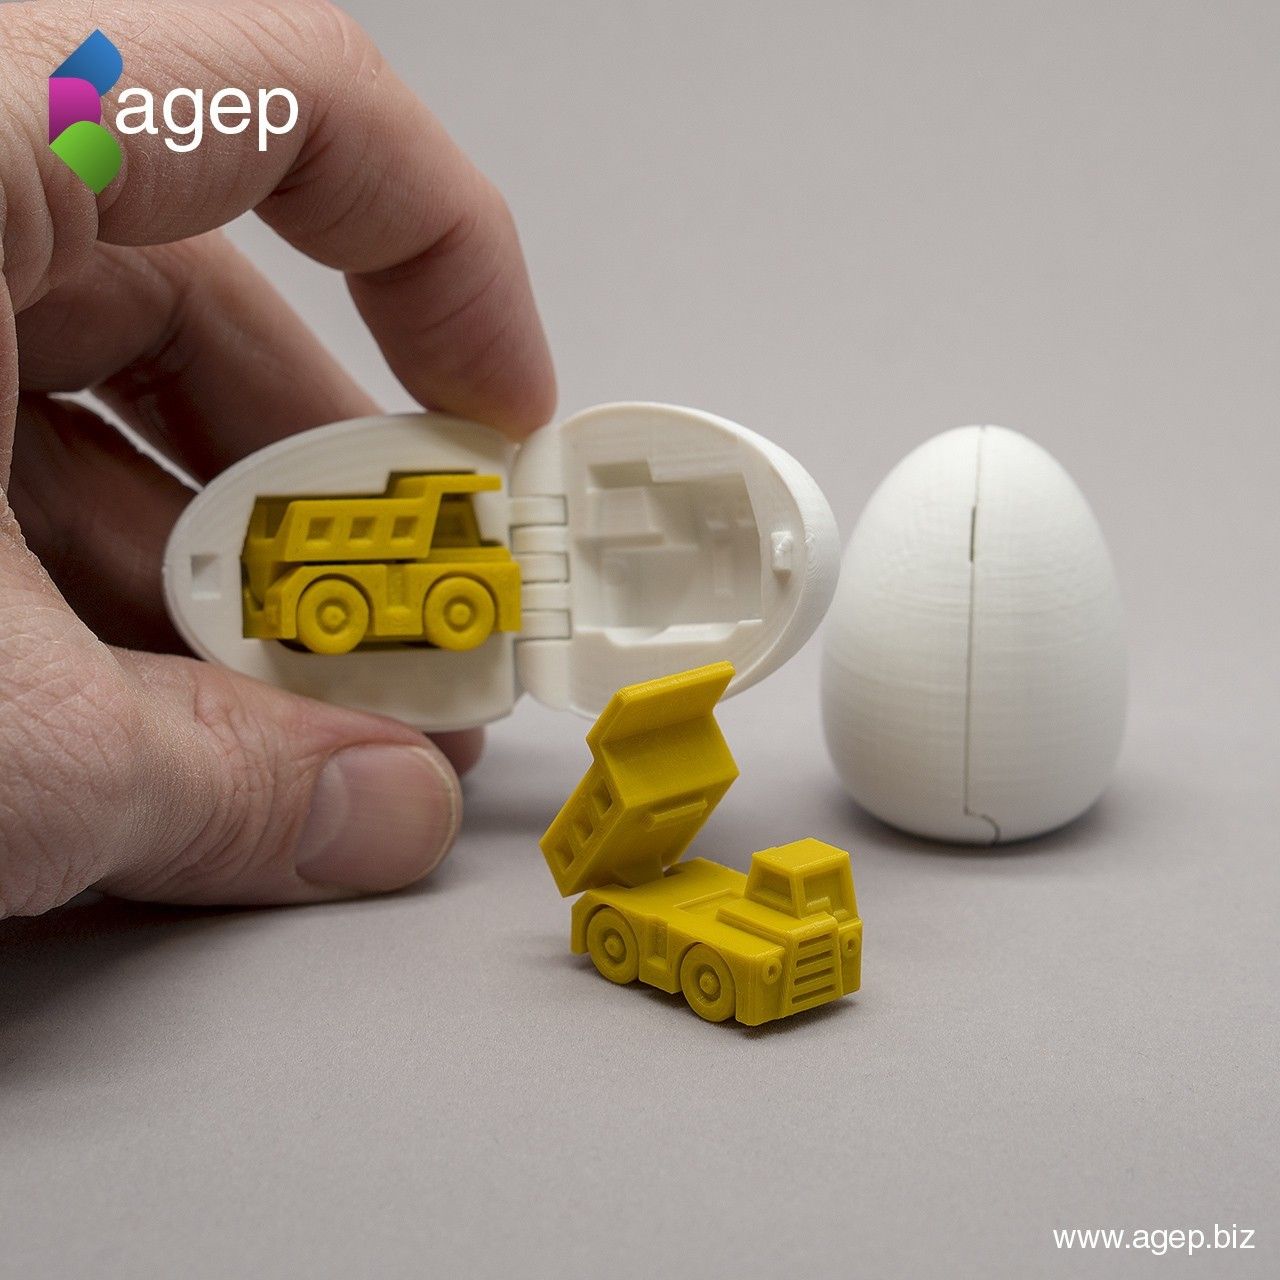 surprise_egg_truck_instagram_new.jpg Archivo STL gratuito 3D Printable Suprise Egg #1 - Tiny Haul Truck・Objeto imprimible en 3D para descargar, agepbiz